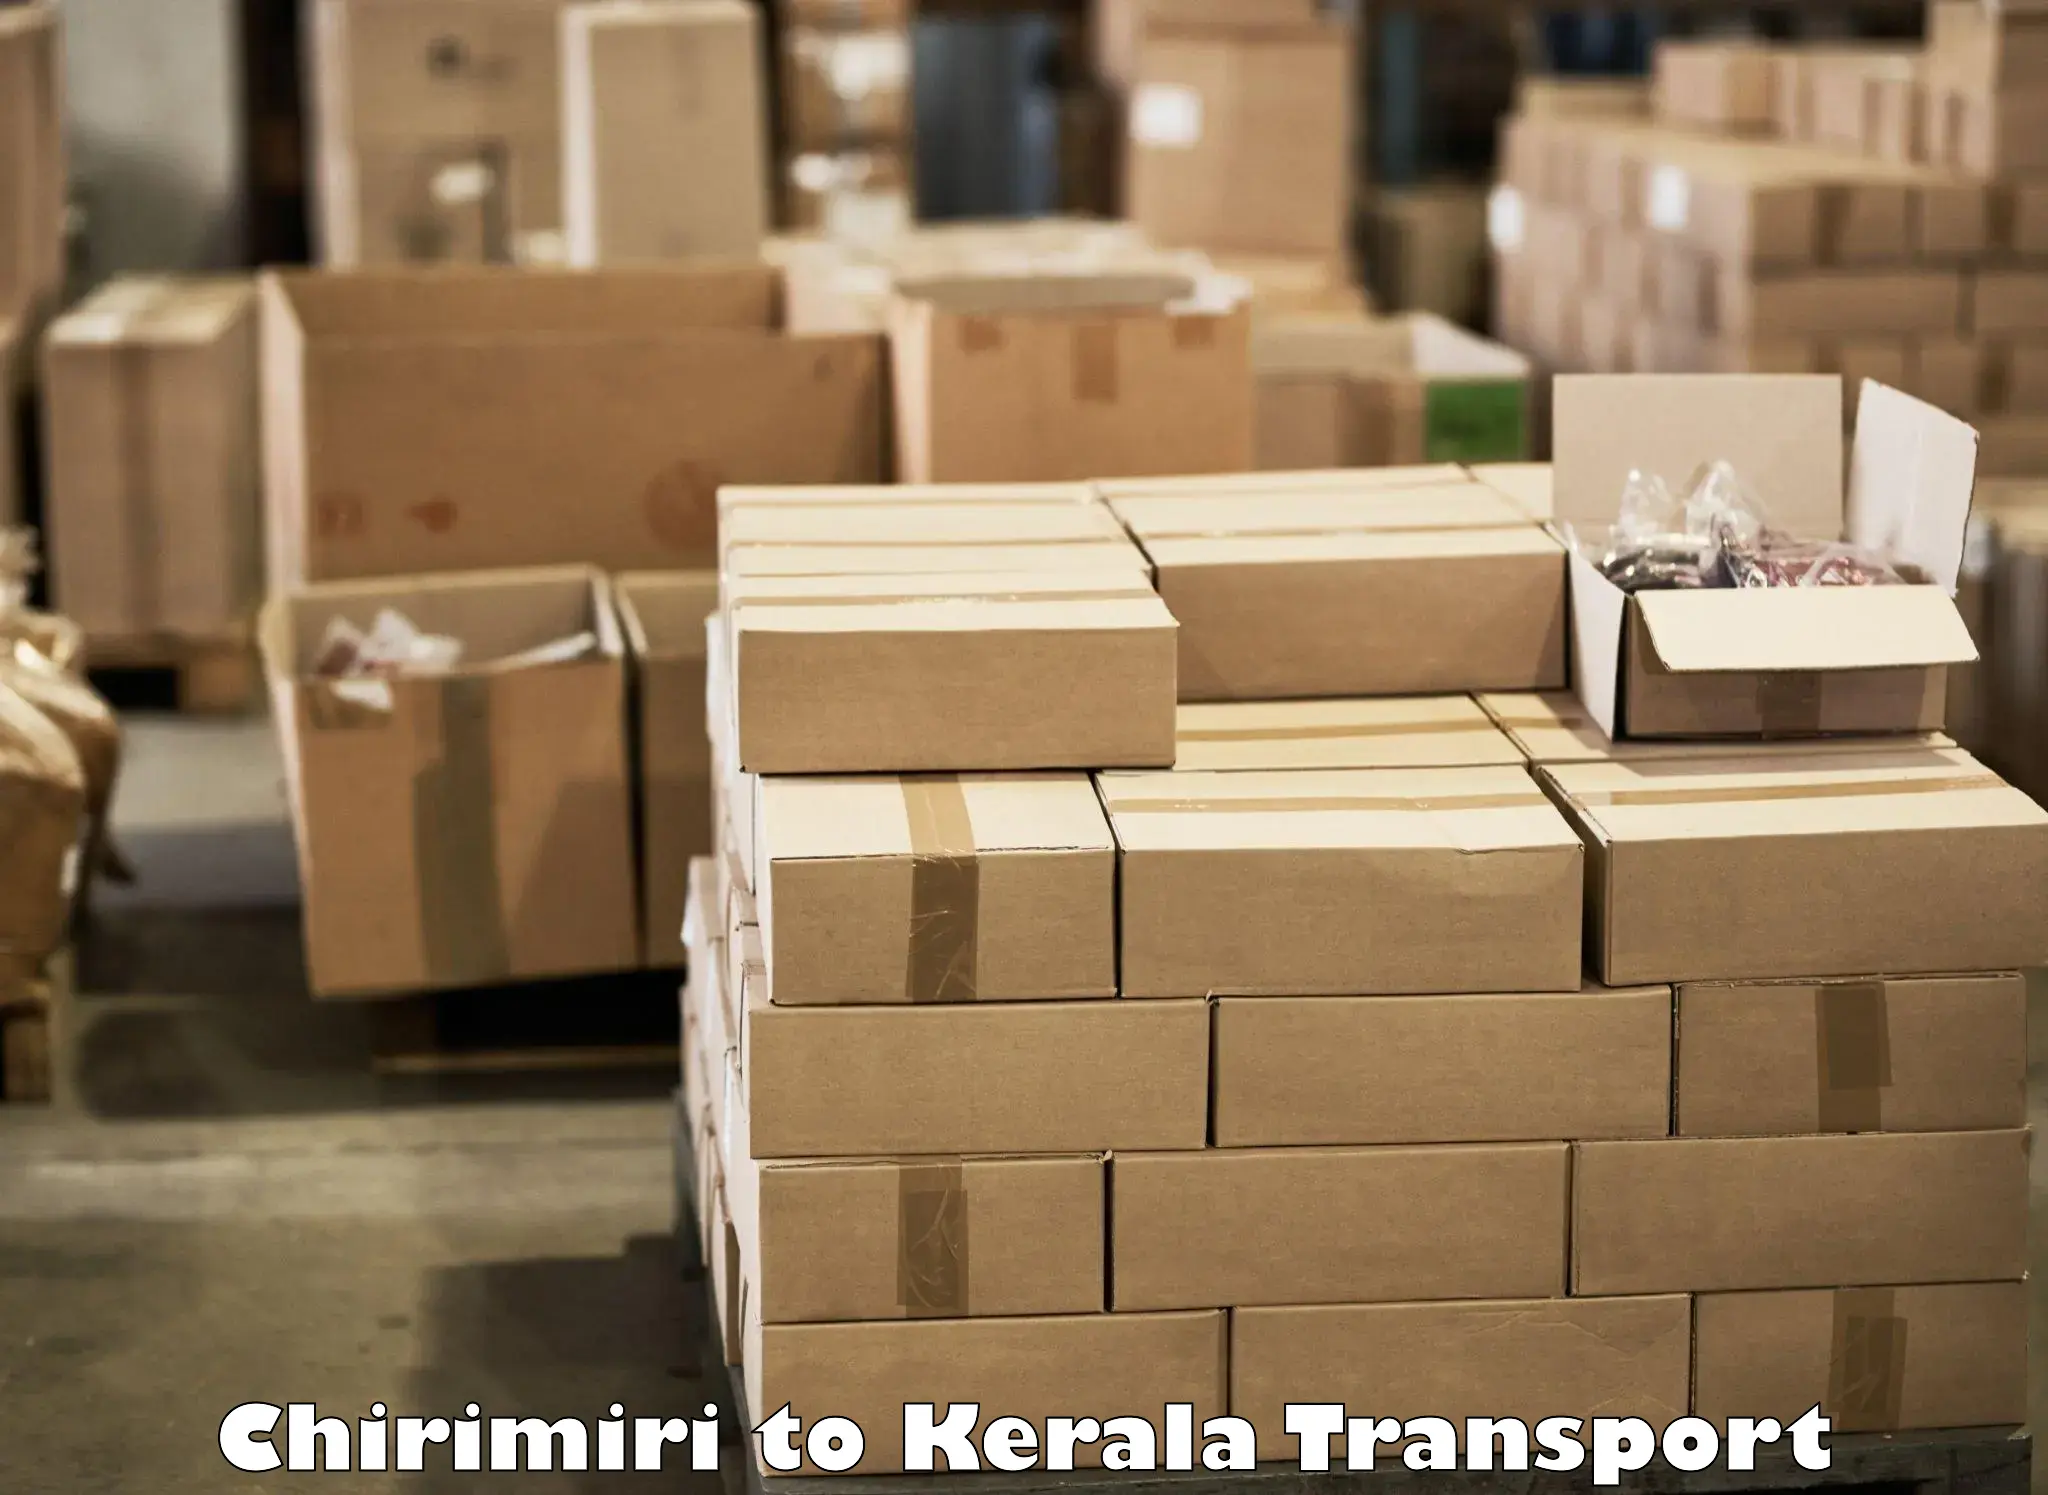 Container transport service Chirimiri to Irinjalakuda